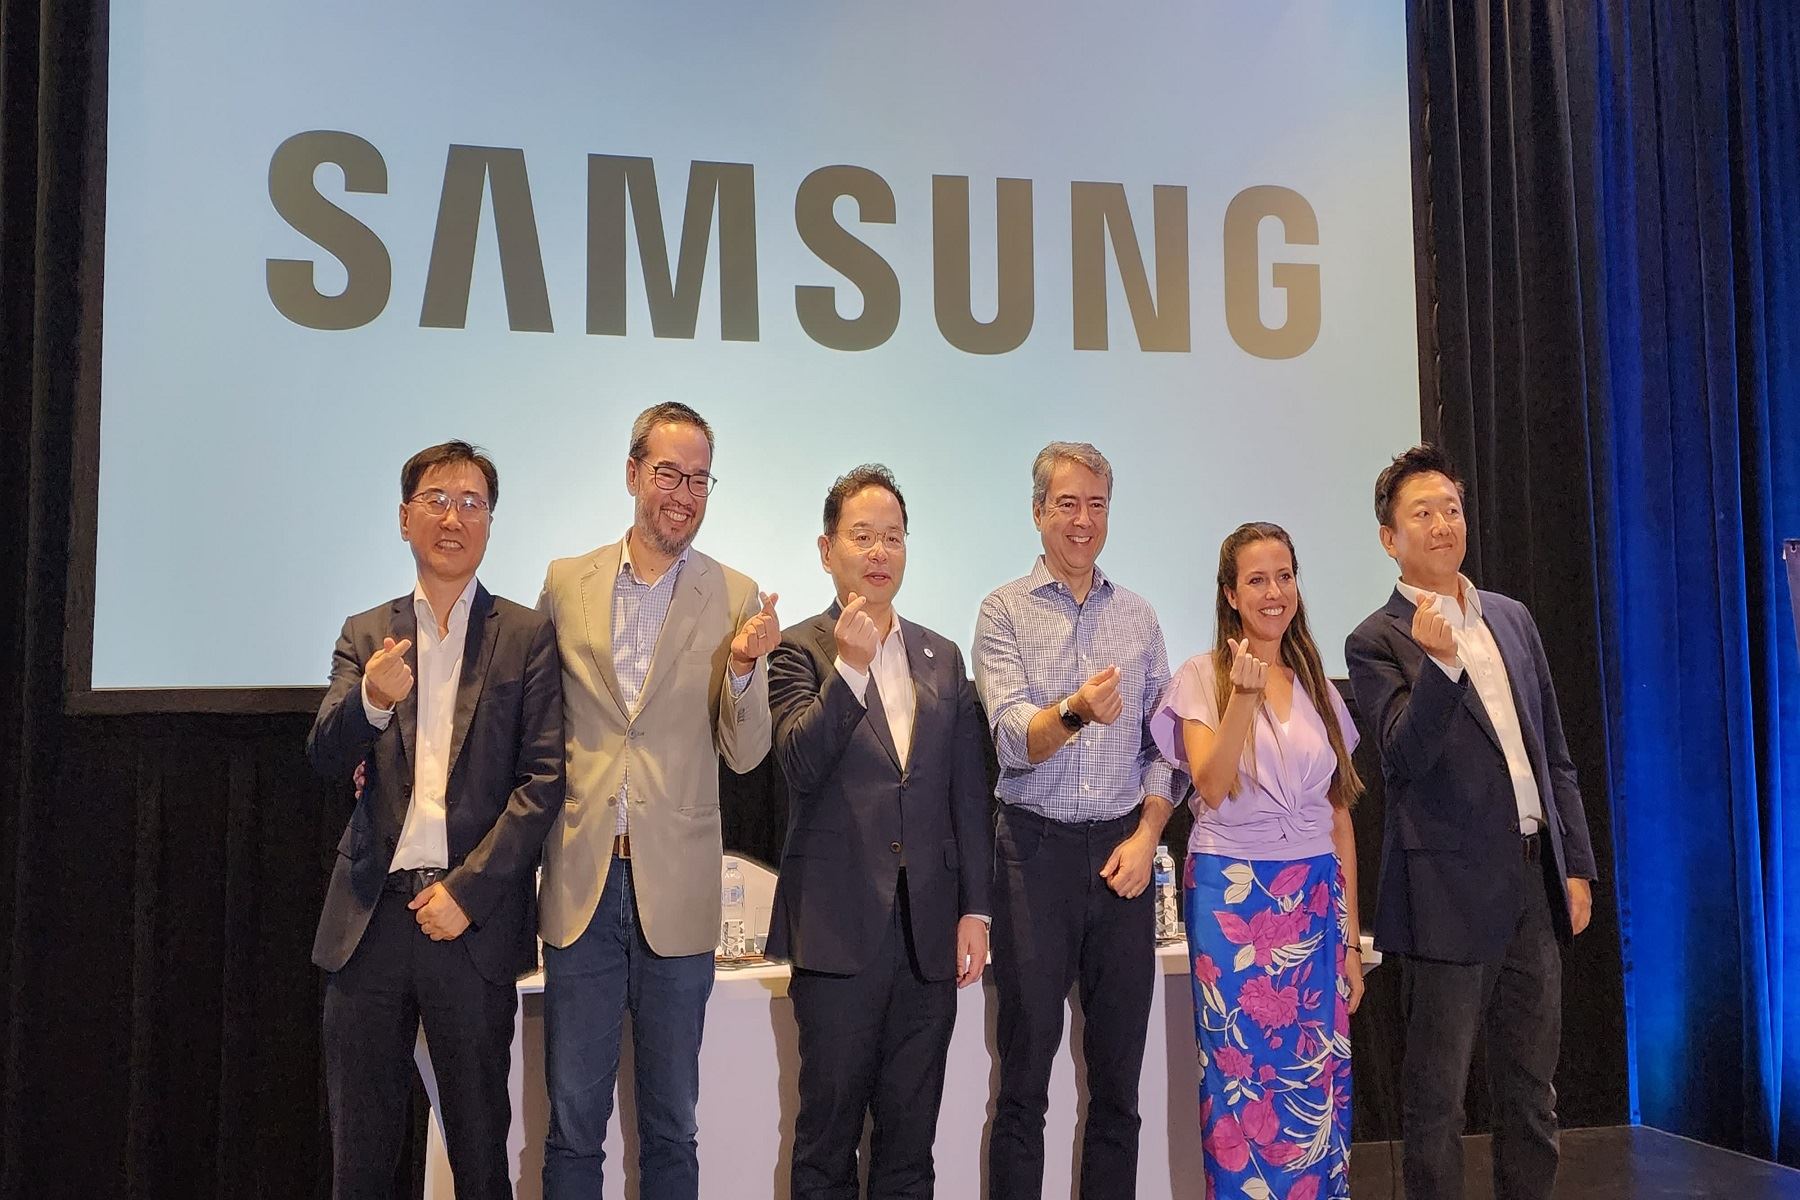 Otro de los buenos ejemplos es la excelente relación del país con la empresa tecnológica Samsung, no solo en lo comercial, sino también en formación de talento tecnológico desde las escuelas hasta los jóvenes que buscan insertarse en el mercado laboral. Para ello cuentan con dos programas claves: Solve for Tomorrow (SFT) y Samsung Innovation Campus.